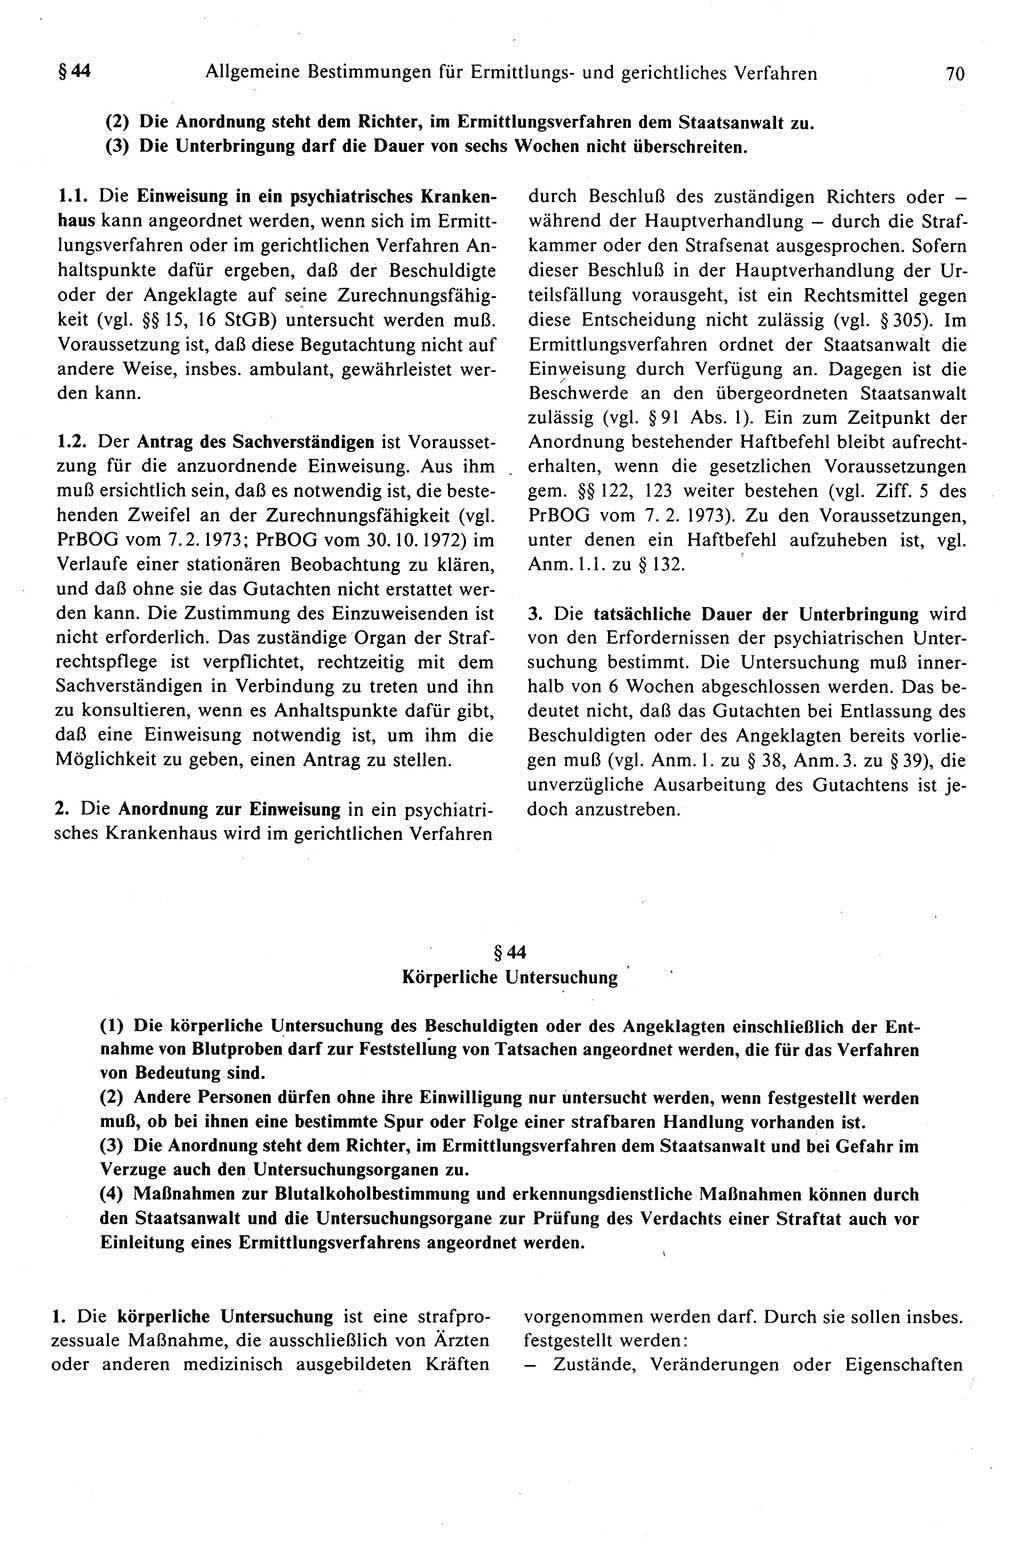 Strafprozeßrecht der DDR (Deutsche Demokratische Republik), Kommentar zur Strafprozeßordnung (StPO) 1989, Seite 70 (Strafprozeßr. DDR Komm. StPO 1989, S. 70)